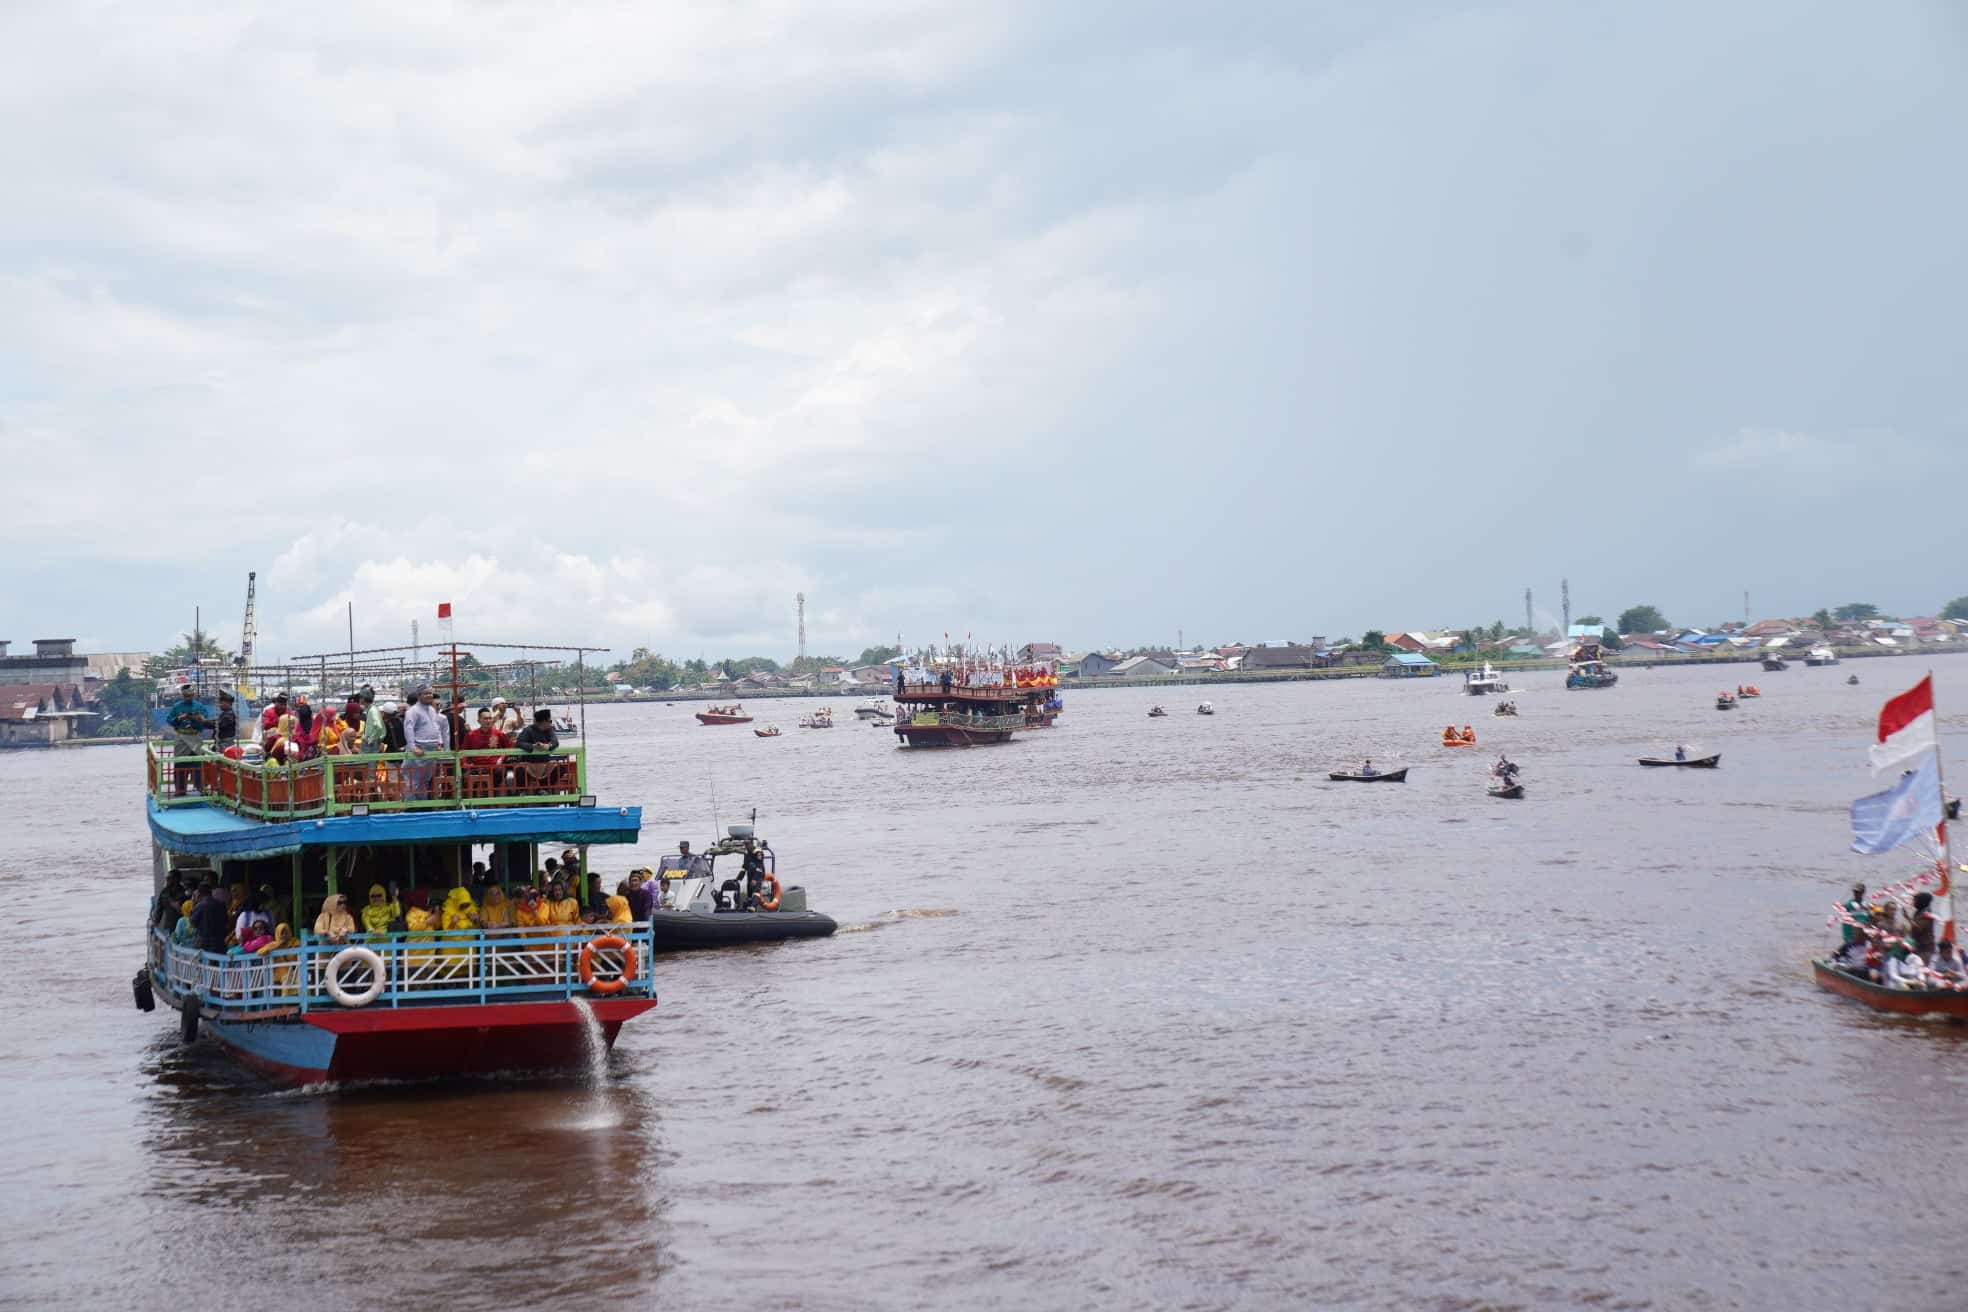 Puluhan kapal dan sampan ikut serta dalam Karnaval Air menyusuri Sungai Kapuas untuk berziarah menuju Makam Kesultanan di Batu Layang. (Foto: Prokopim For KalbarOnline.com)